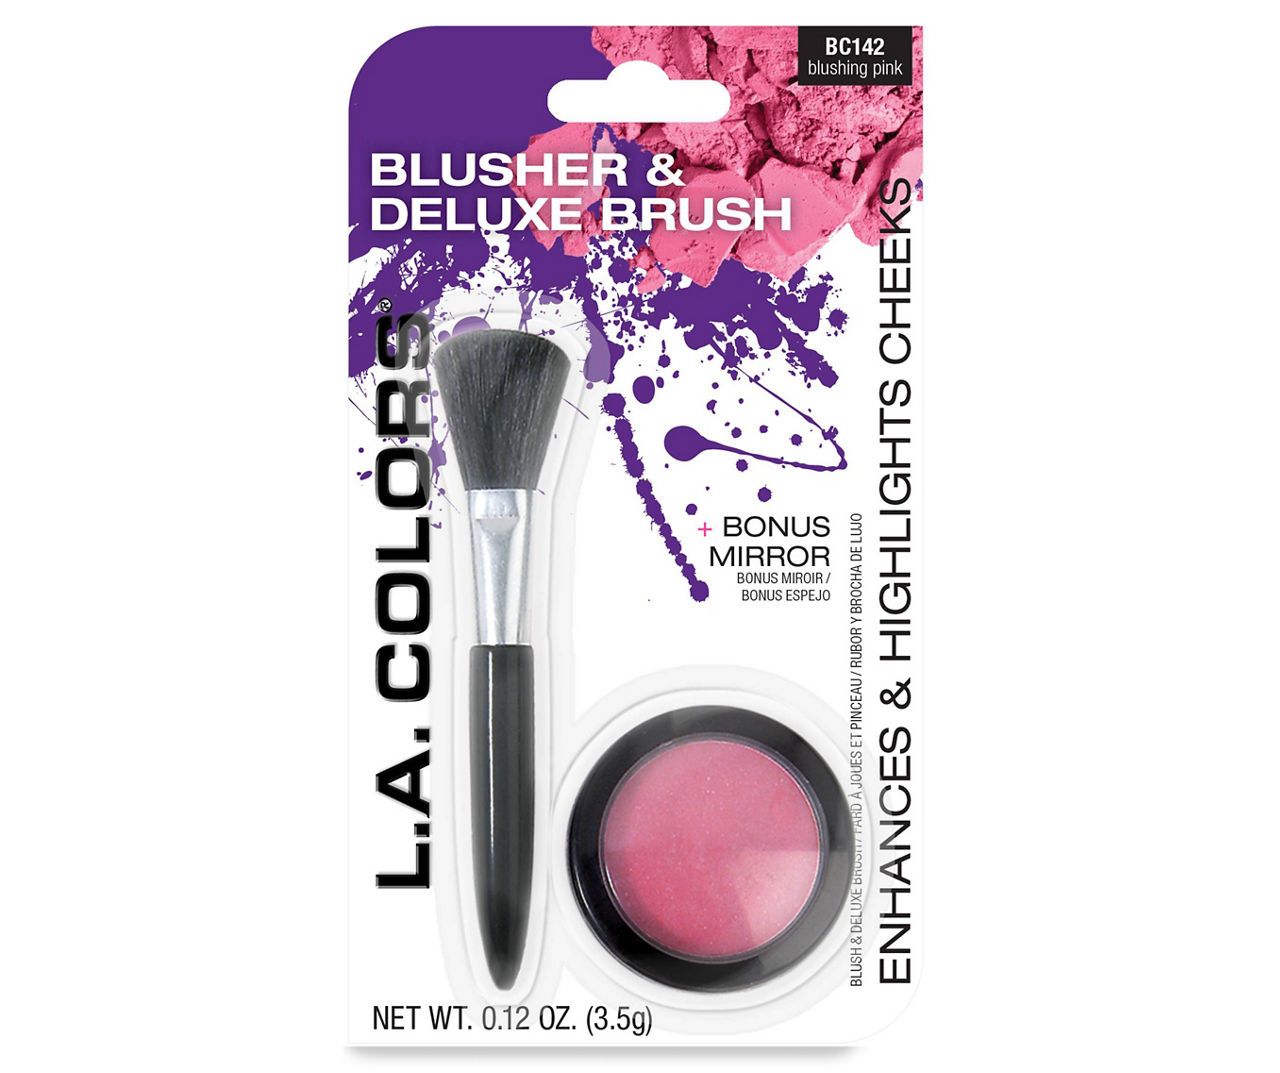 Blusher & Deluxe Brush in Blushing Pink